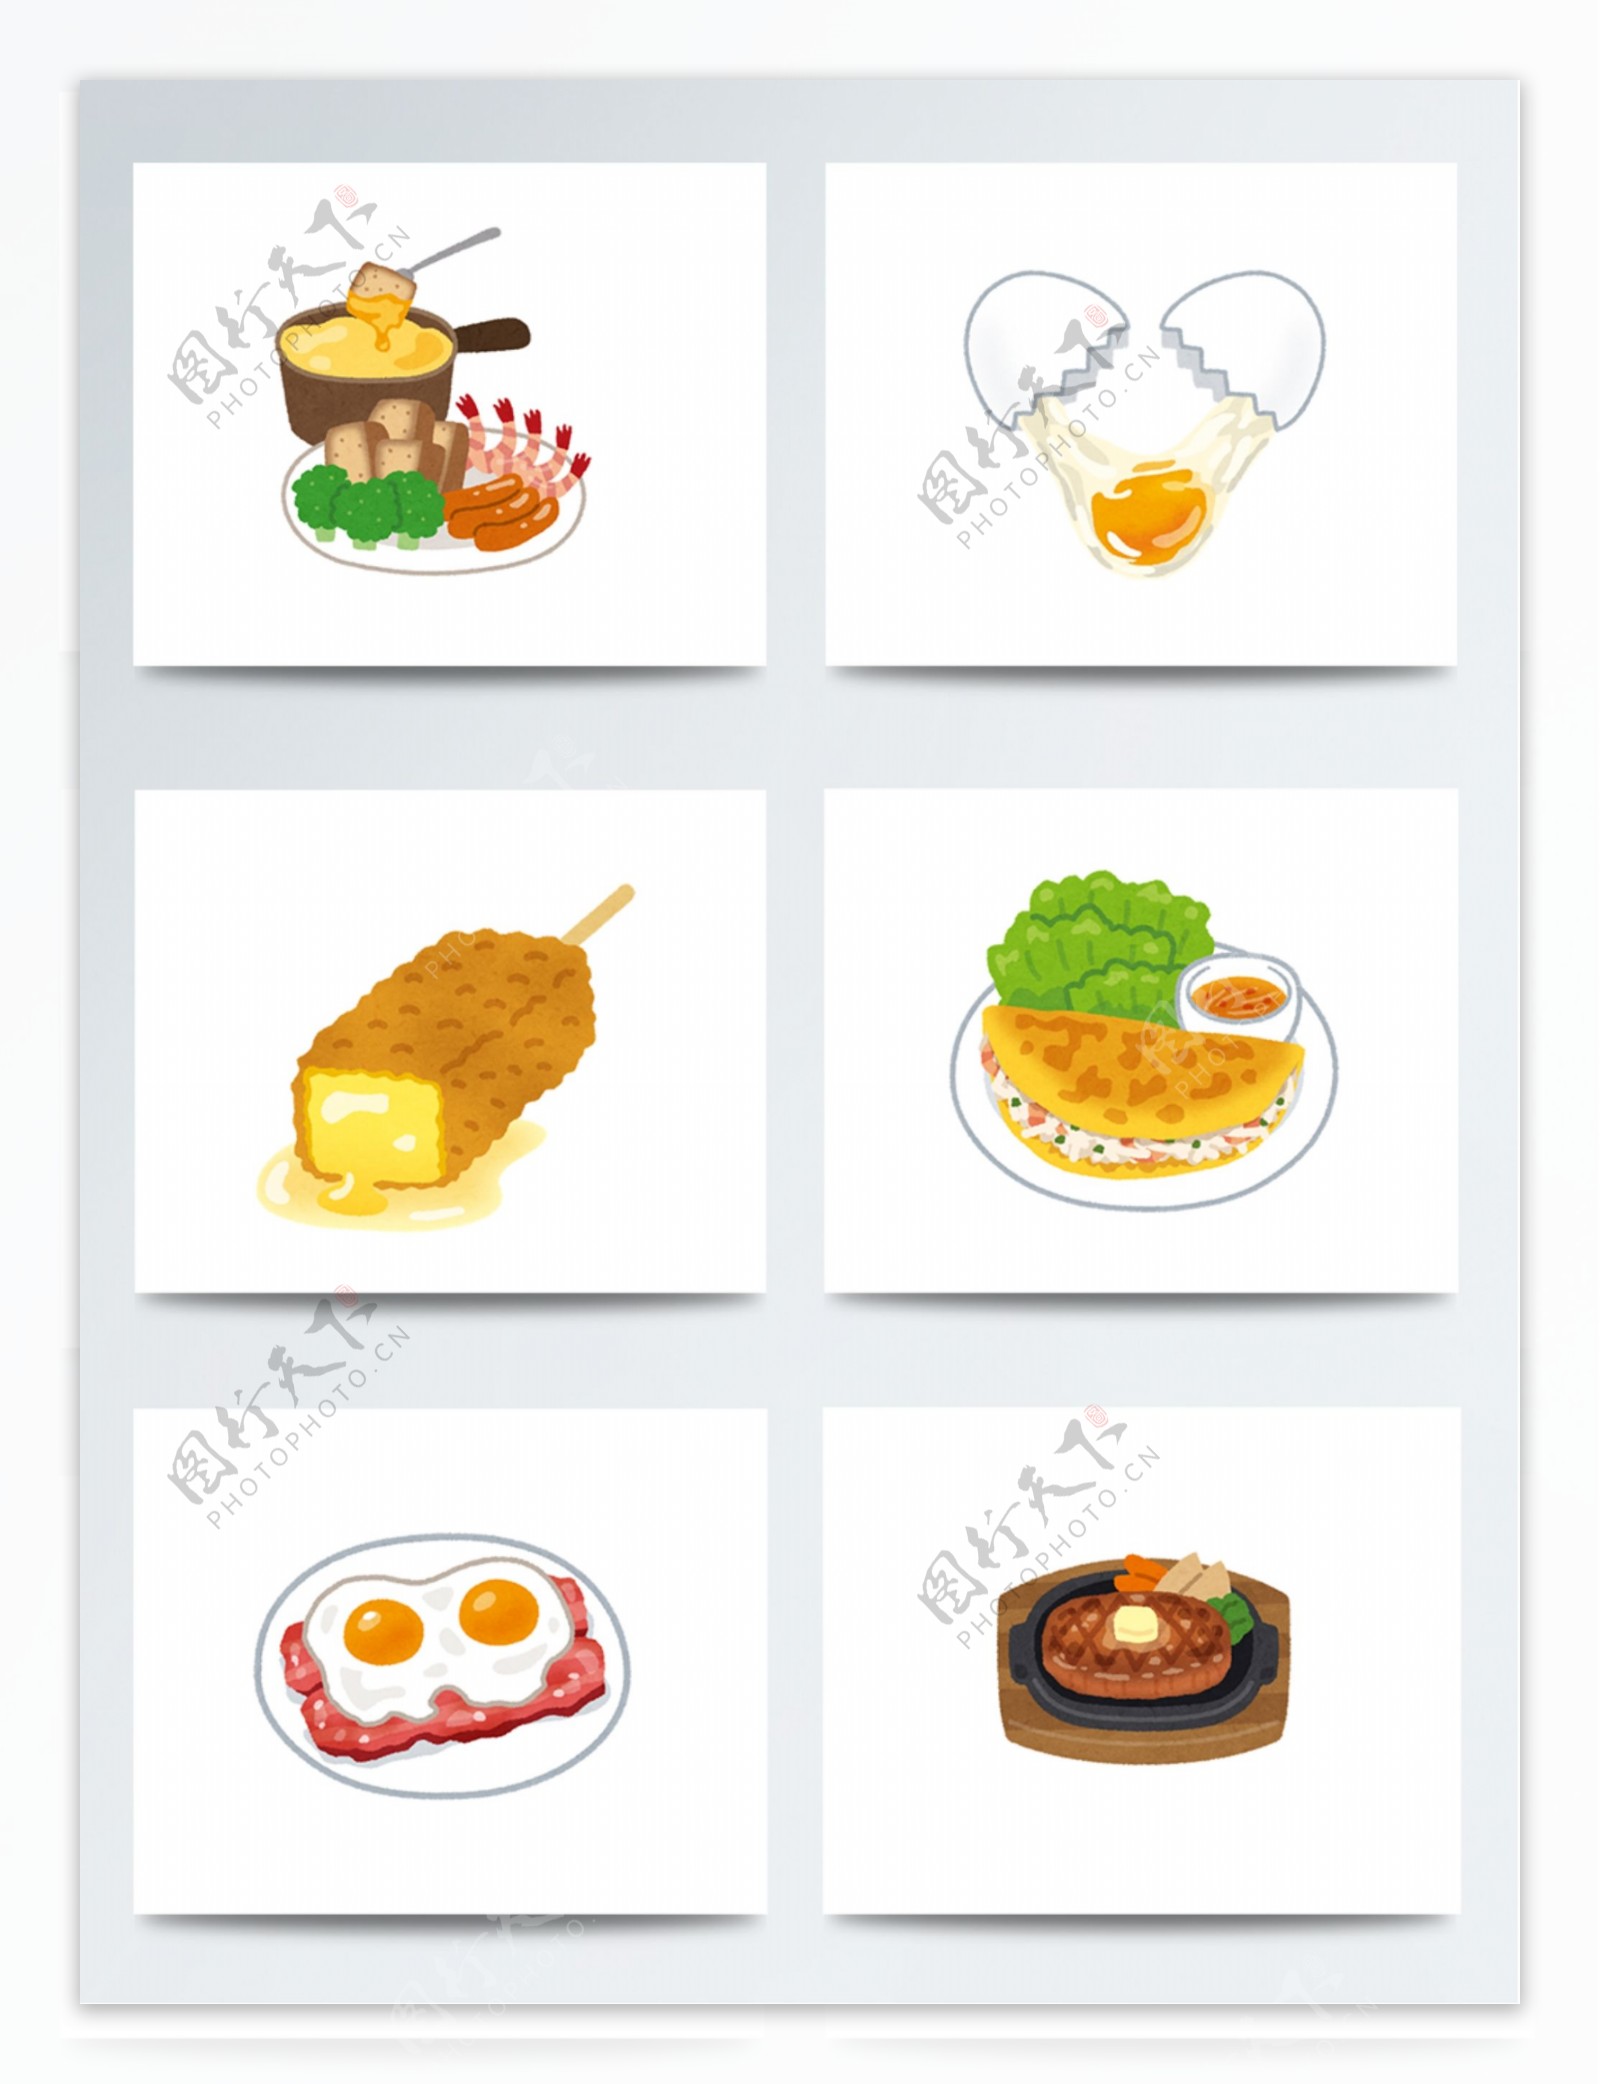 彩绘食物素材PSD图案